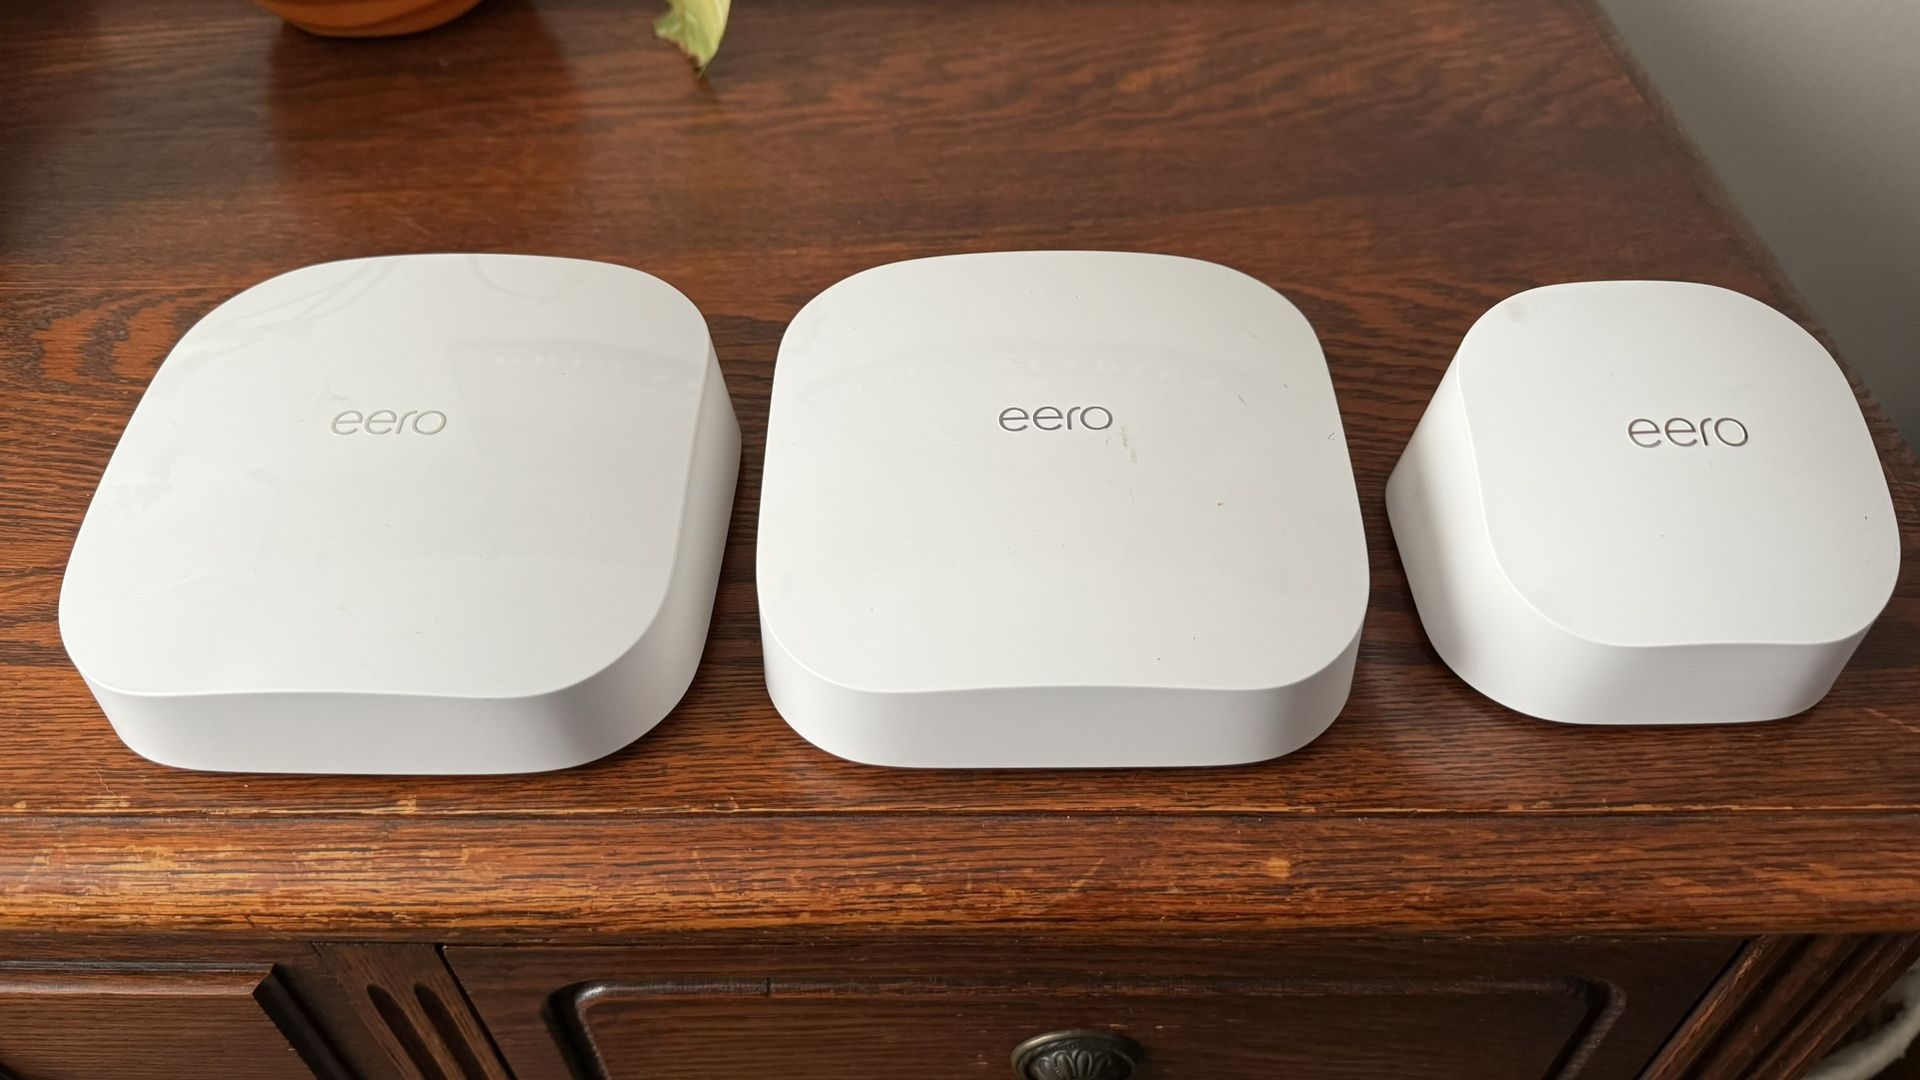 Eero Pro 6 Mesh Wi-Fi System